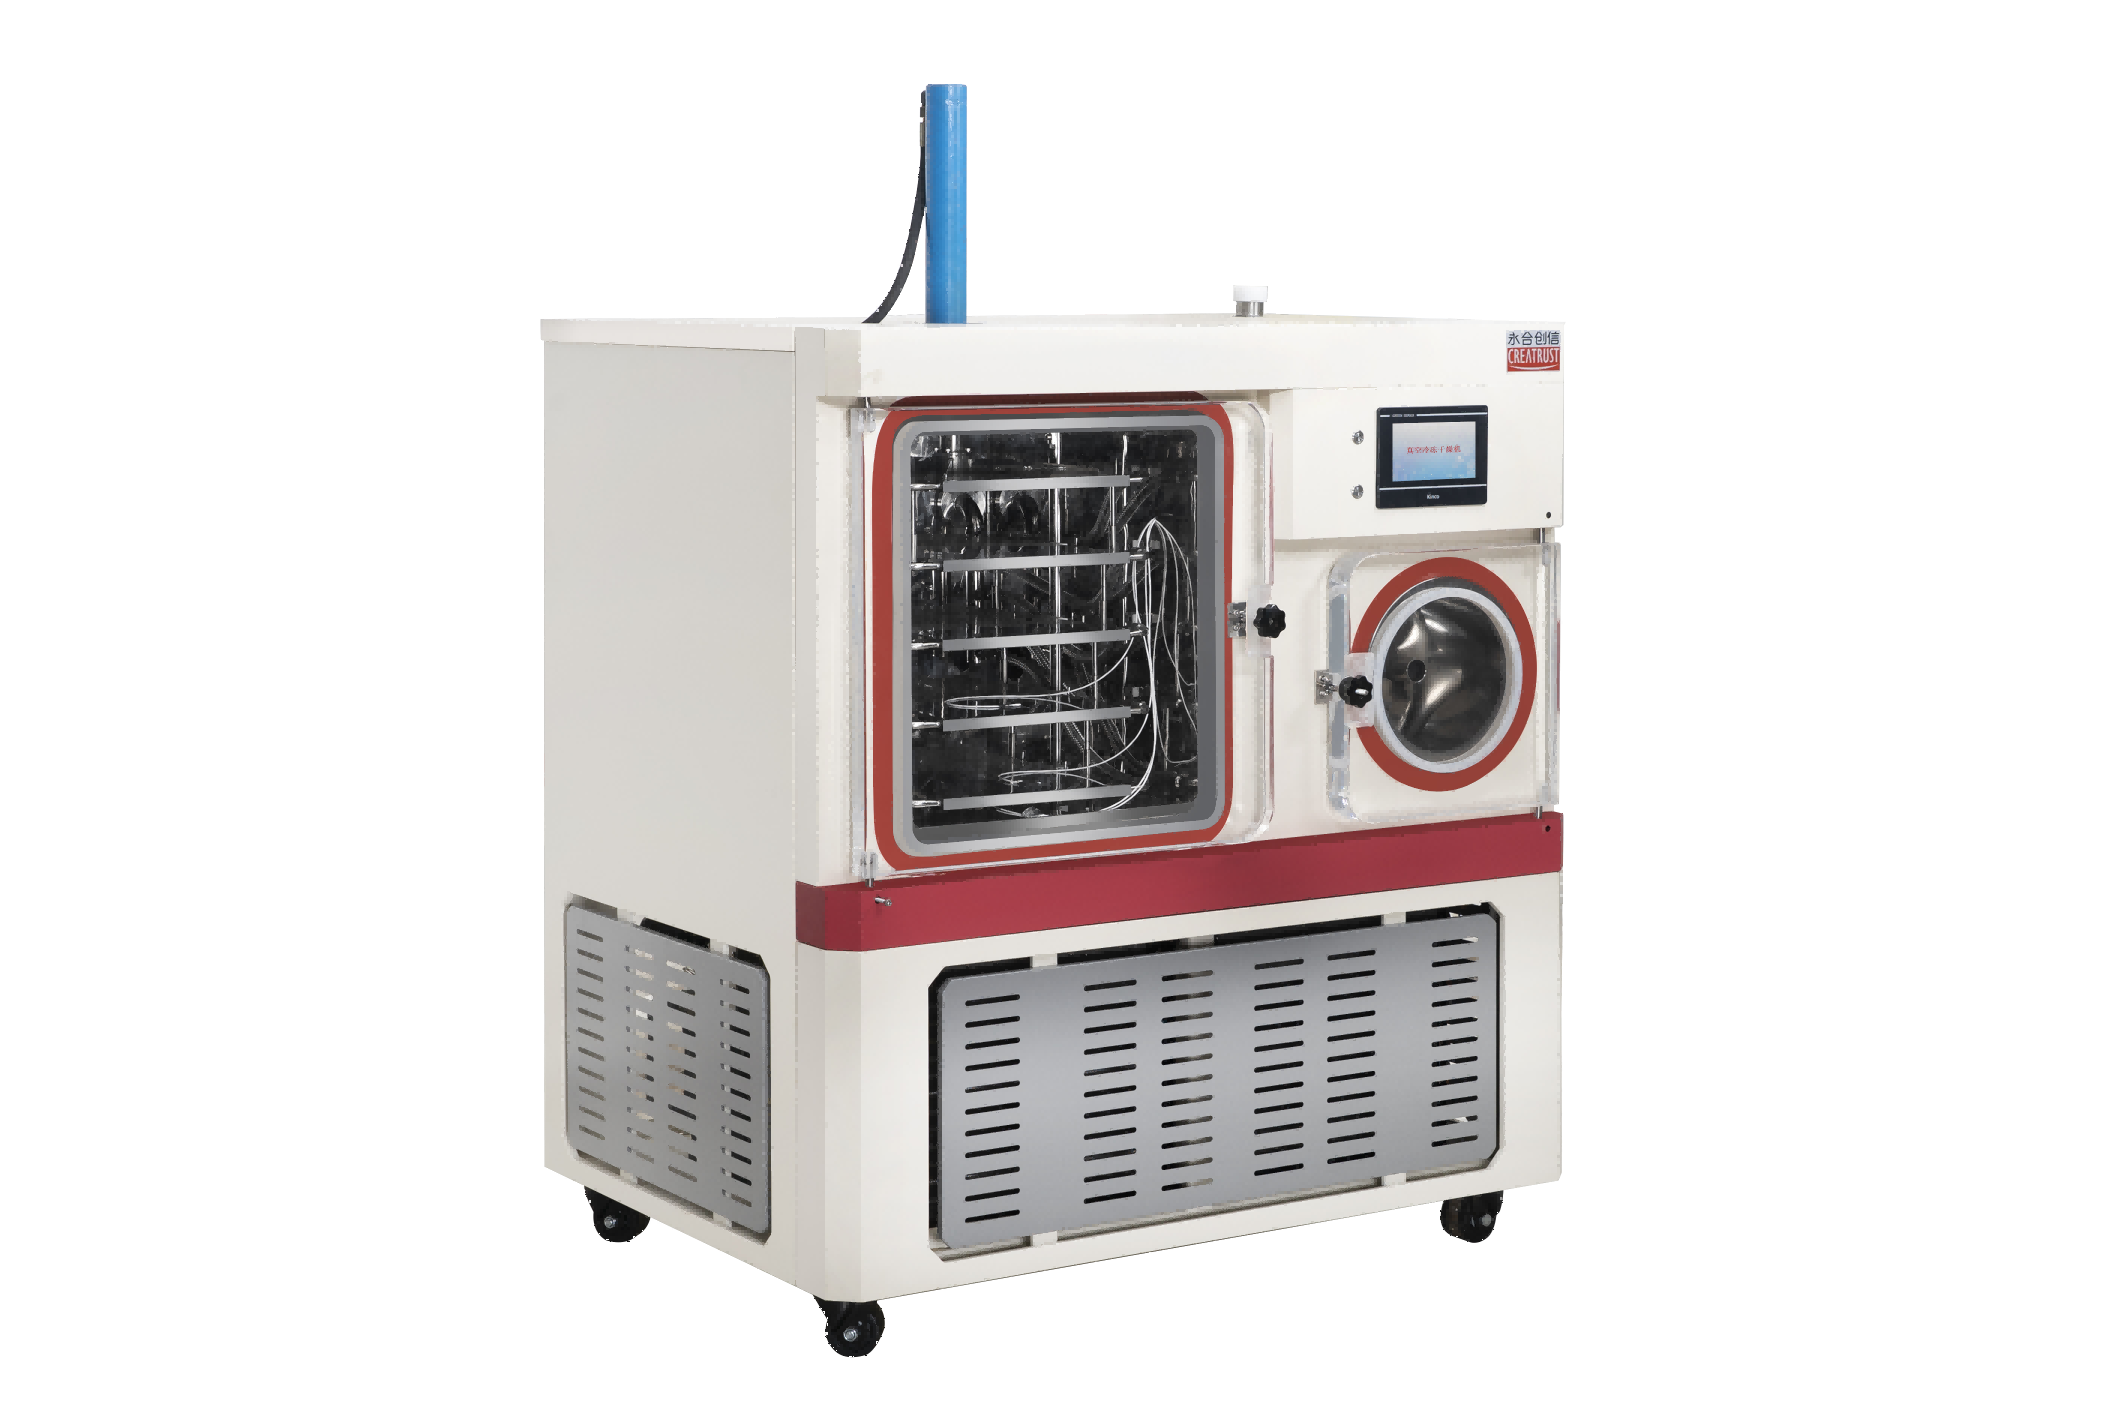  永合创信实验室冻干机应用于食品冻干科研开发! 公司动态 第7张